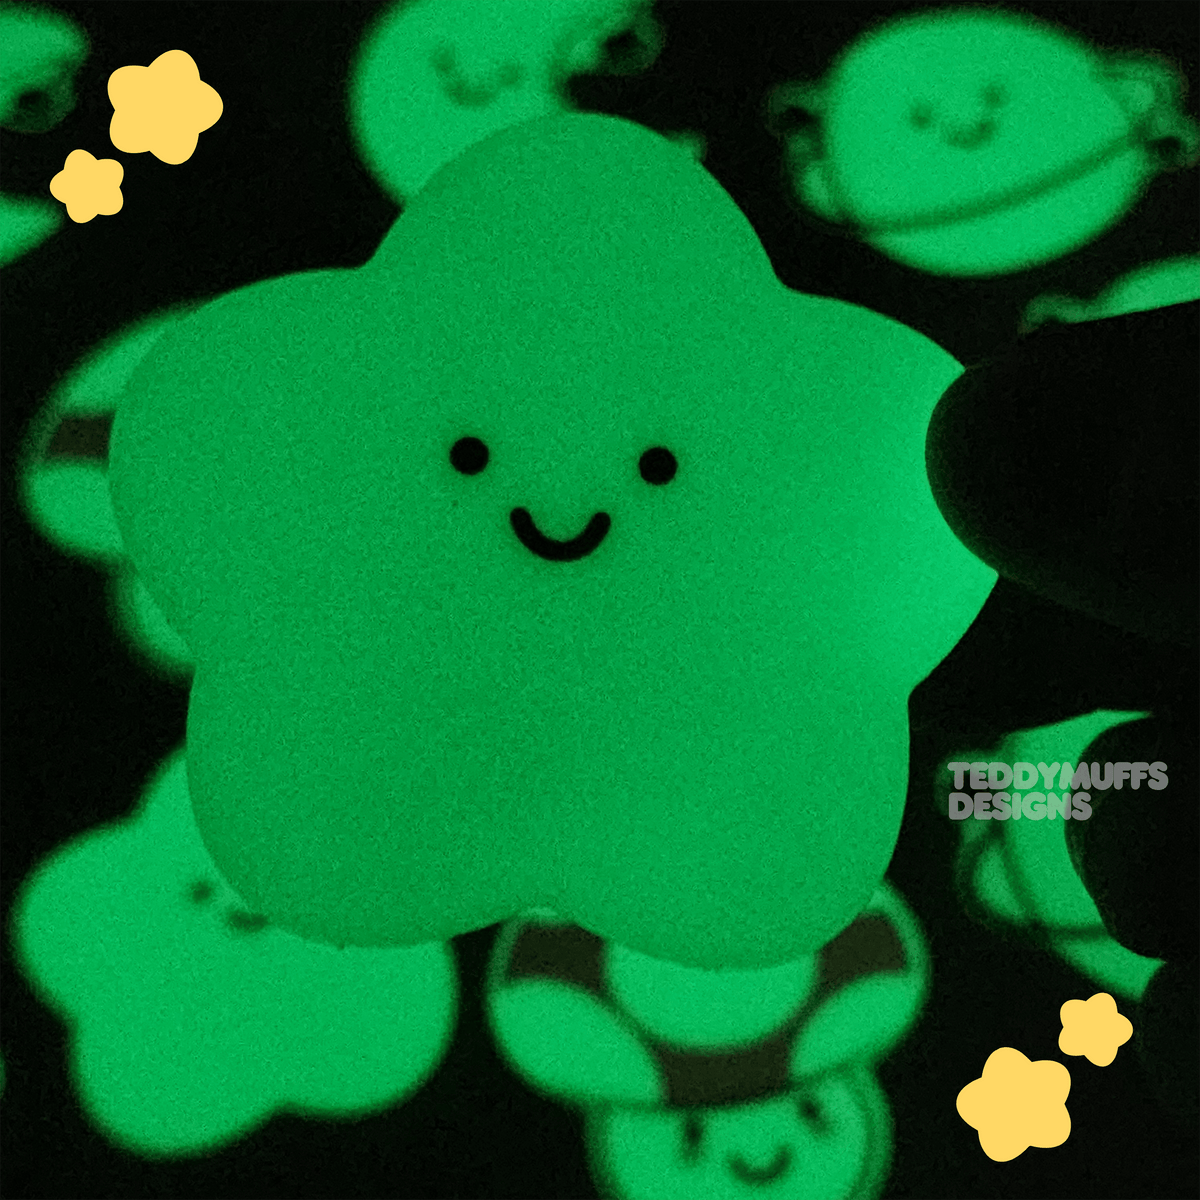 Glow in the Dark Star Sticker - Teddymuffs Designs